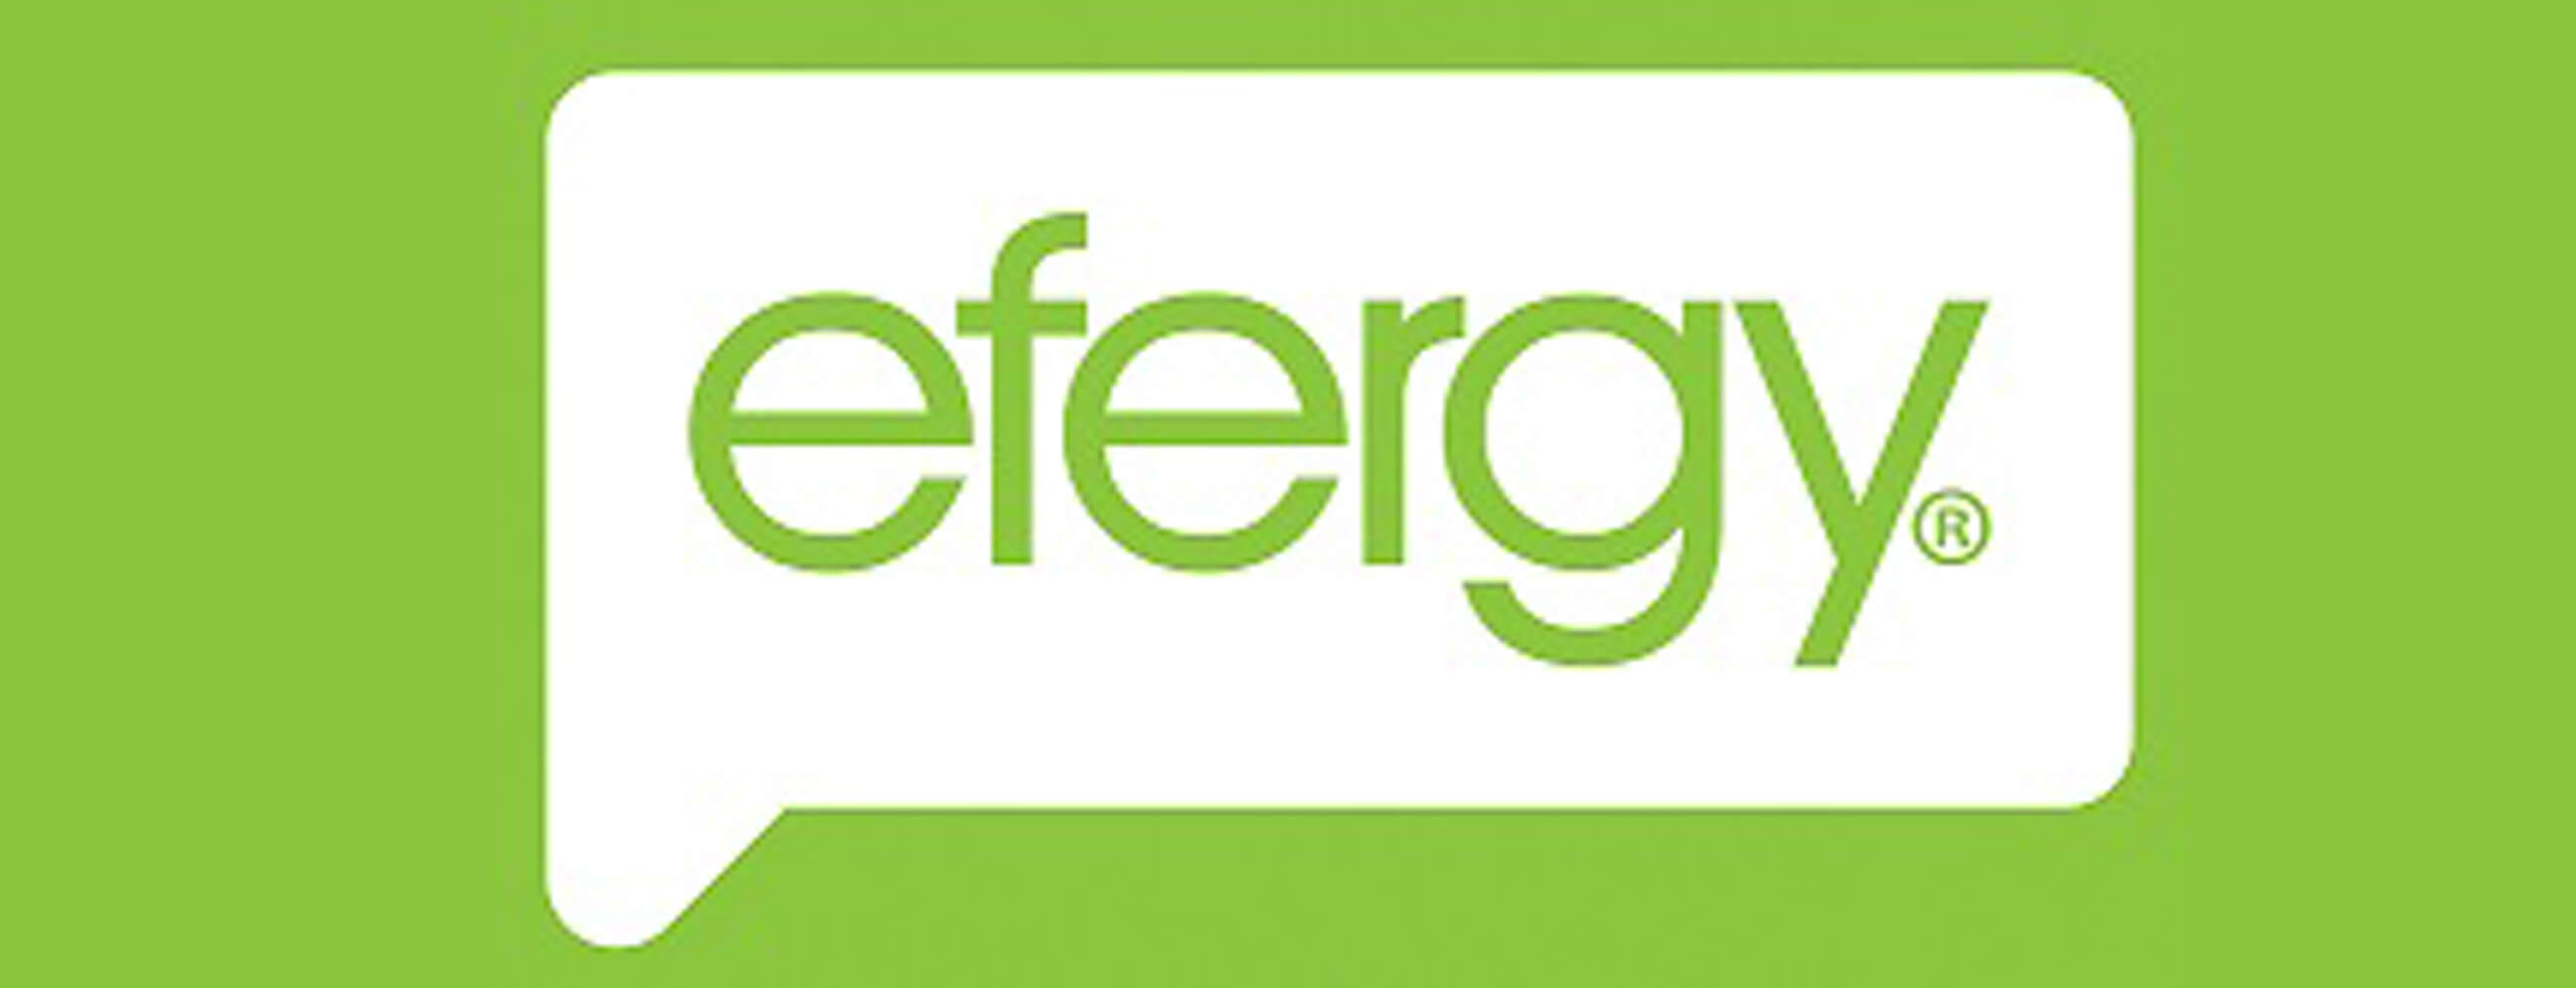 A Efergy irá lançar no próximo ano o novo equipamento ENNOVA – Novo Sistema de gestão de energia